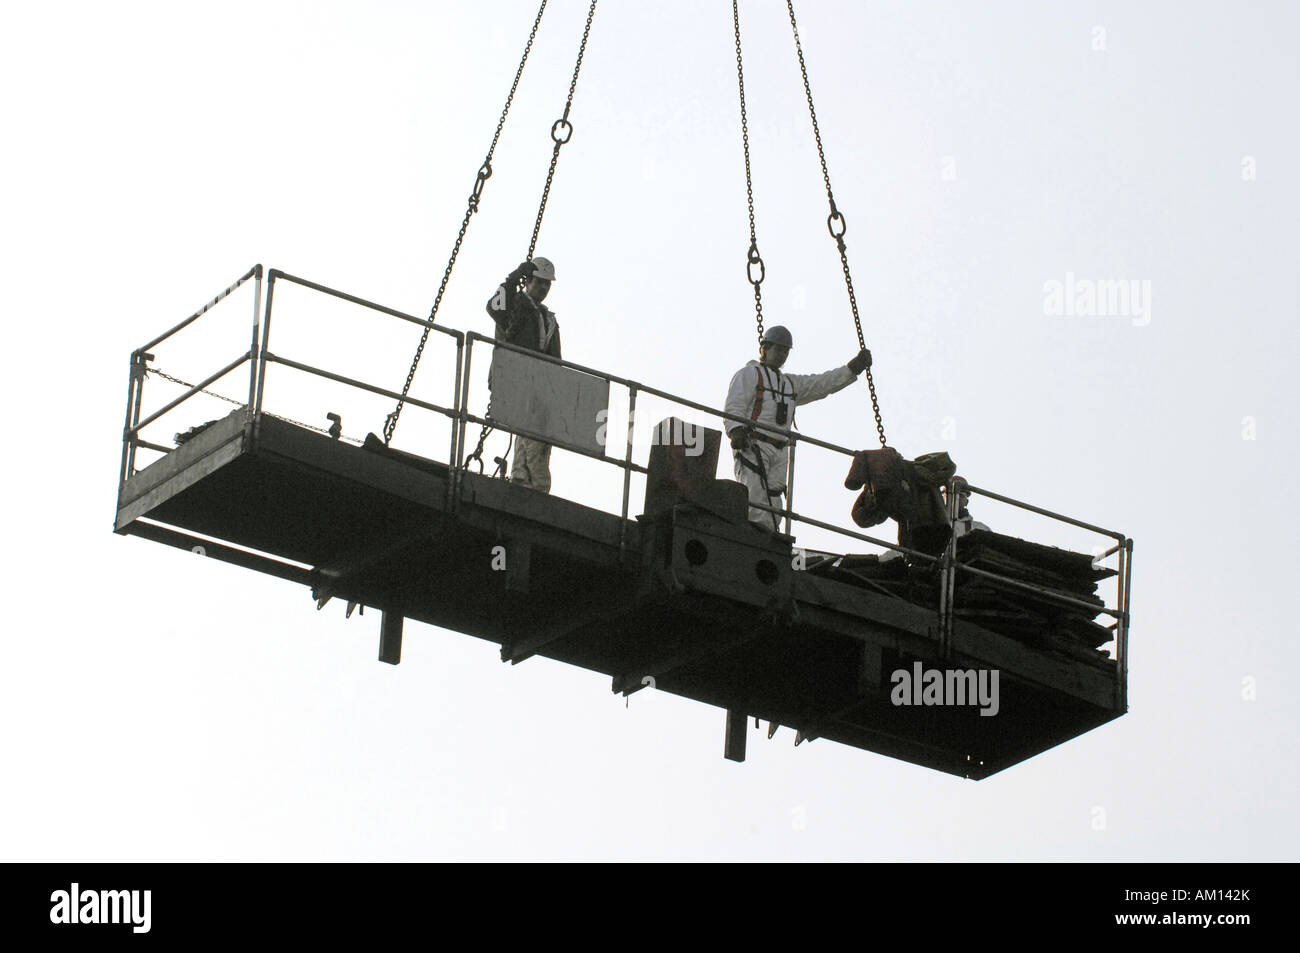 Stripping down - Arbeiter auf einer Plattform an einem Kran hängen. Stillgelegten Hüttenwerk. Maxhuette. Sulzbach-Rosenberg, Bayern, Keim Stockfoto